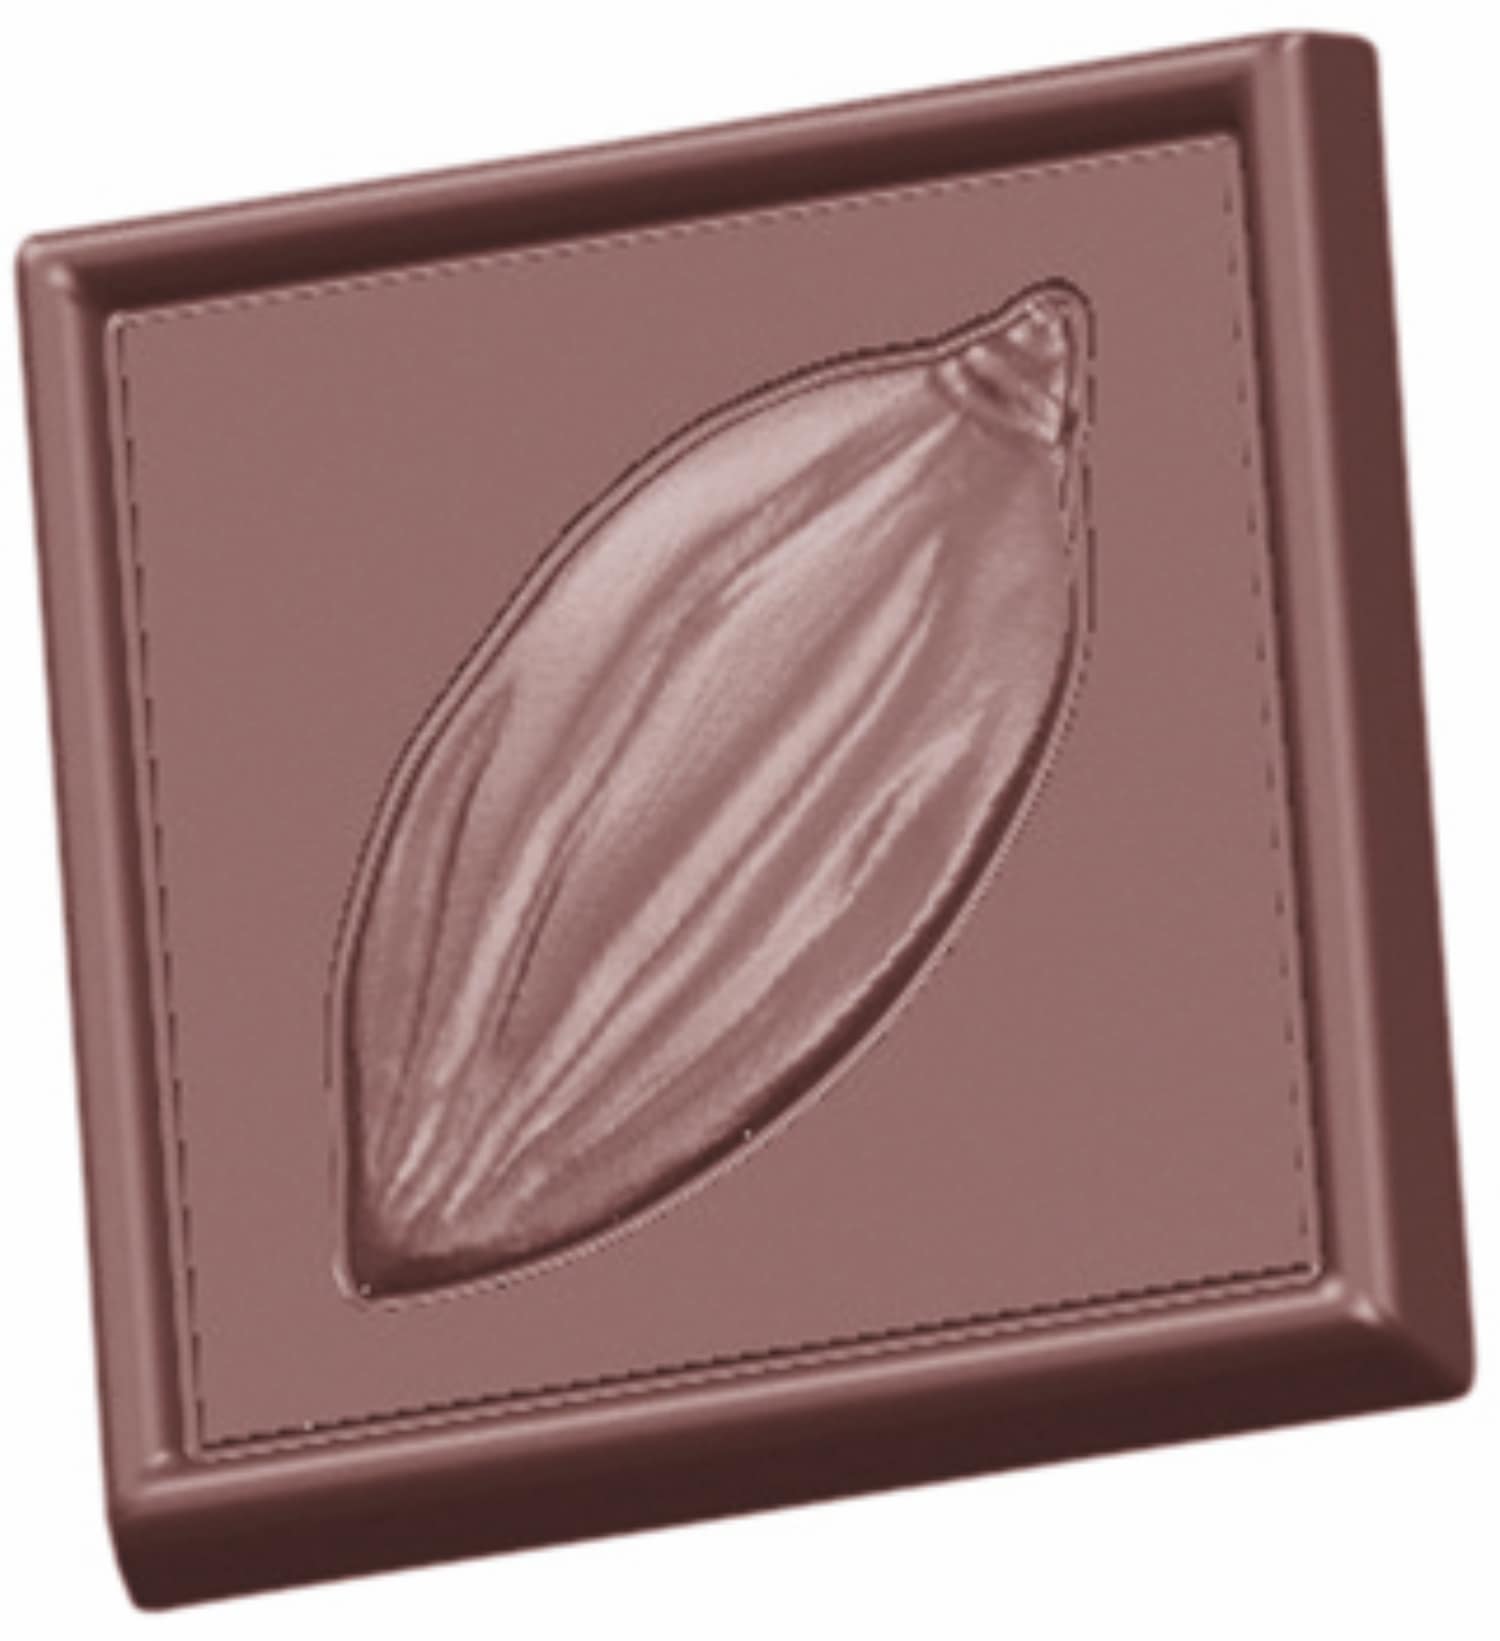 Schokoladenform "Kakaobohne" 422431